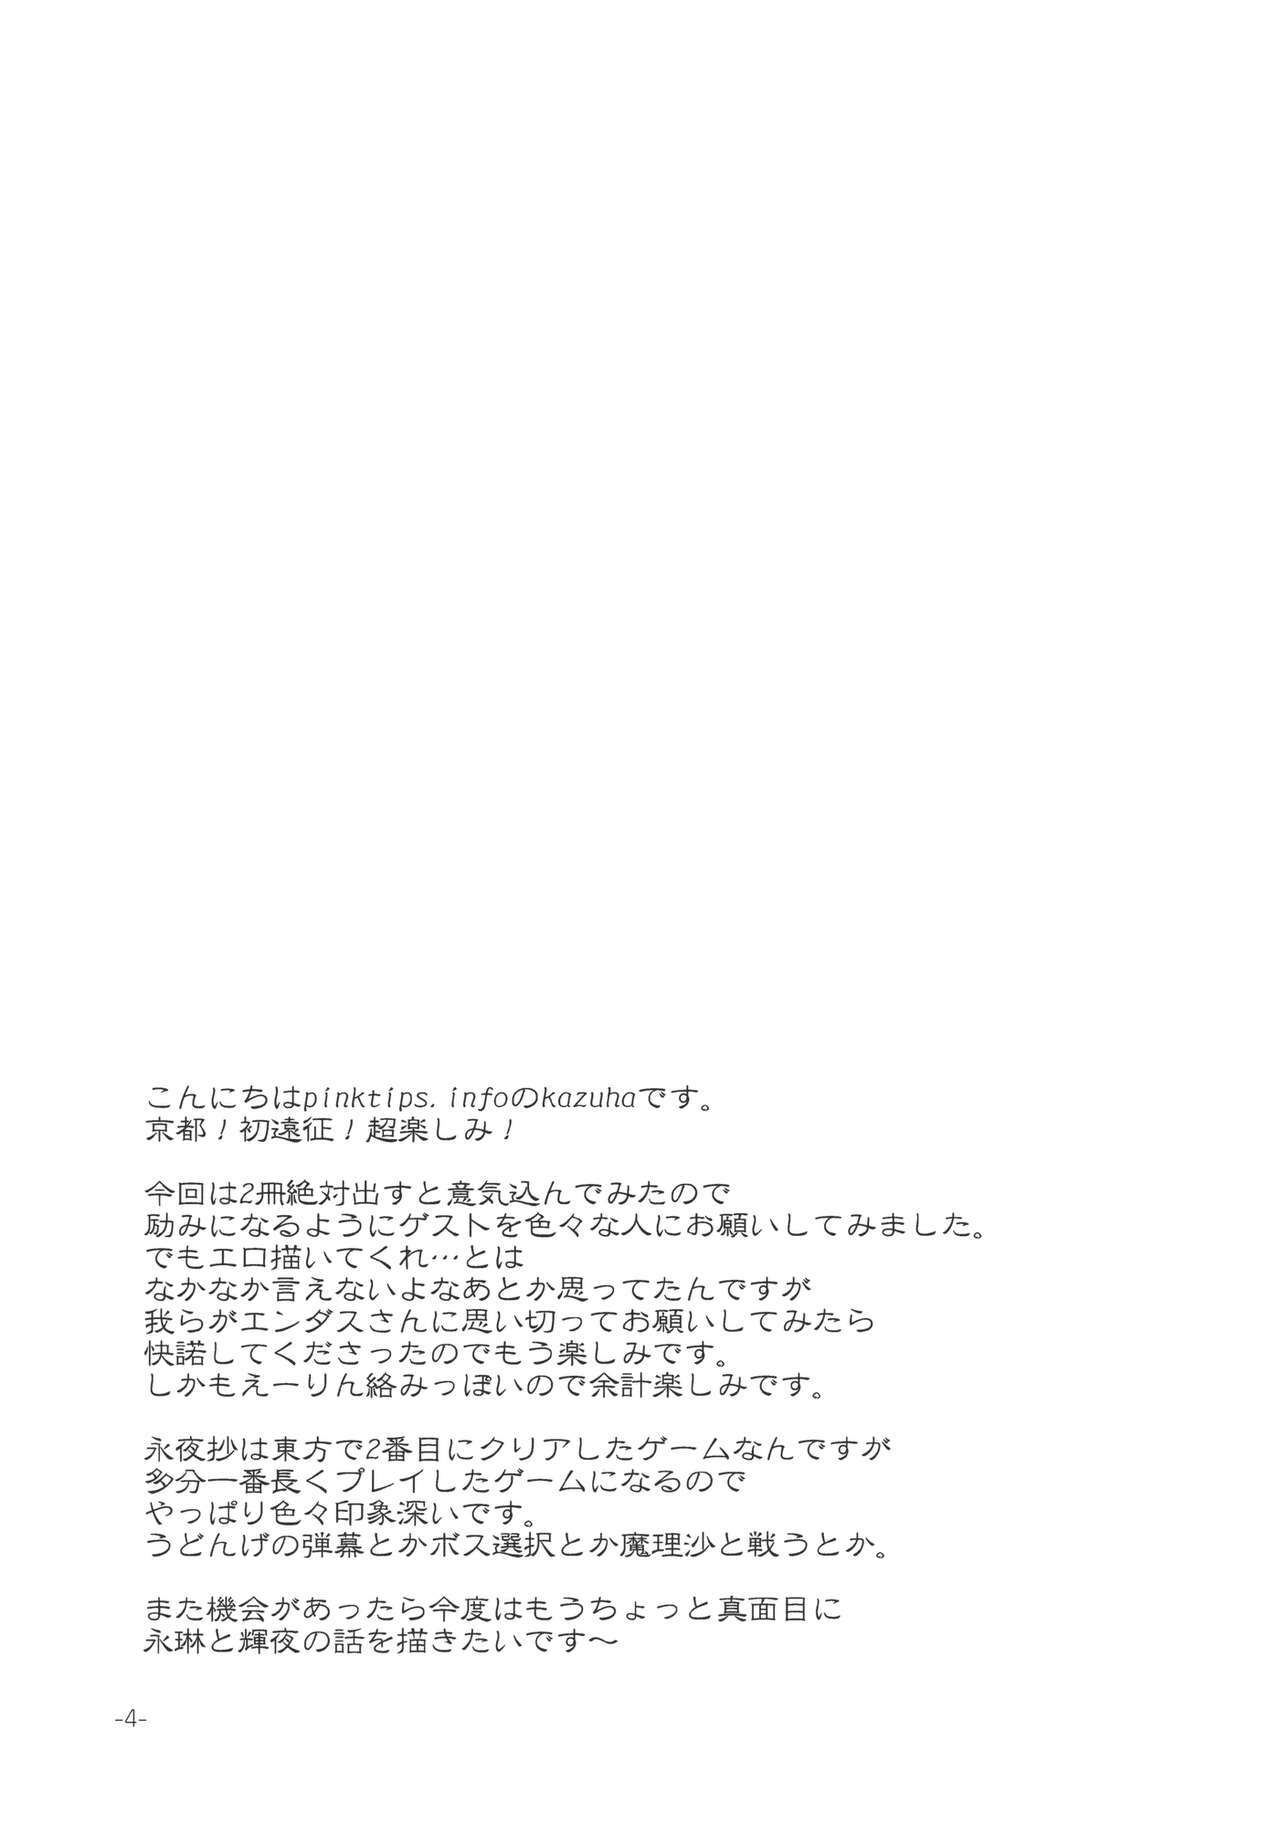 (Kouroumu 4) [pinktips.info (kazuha)] Wasurerarenai Toaru Ichiya (Touhou Project) page 4 full